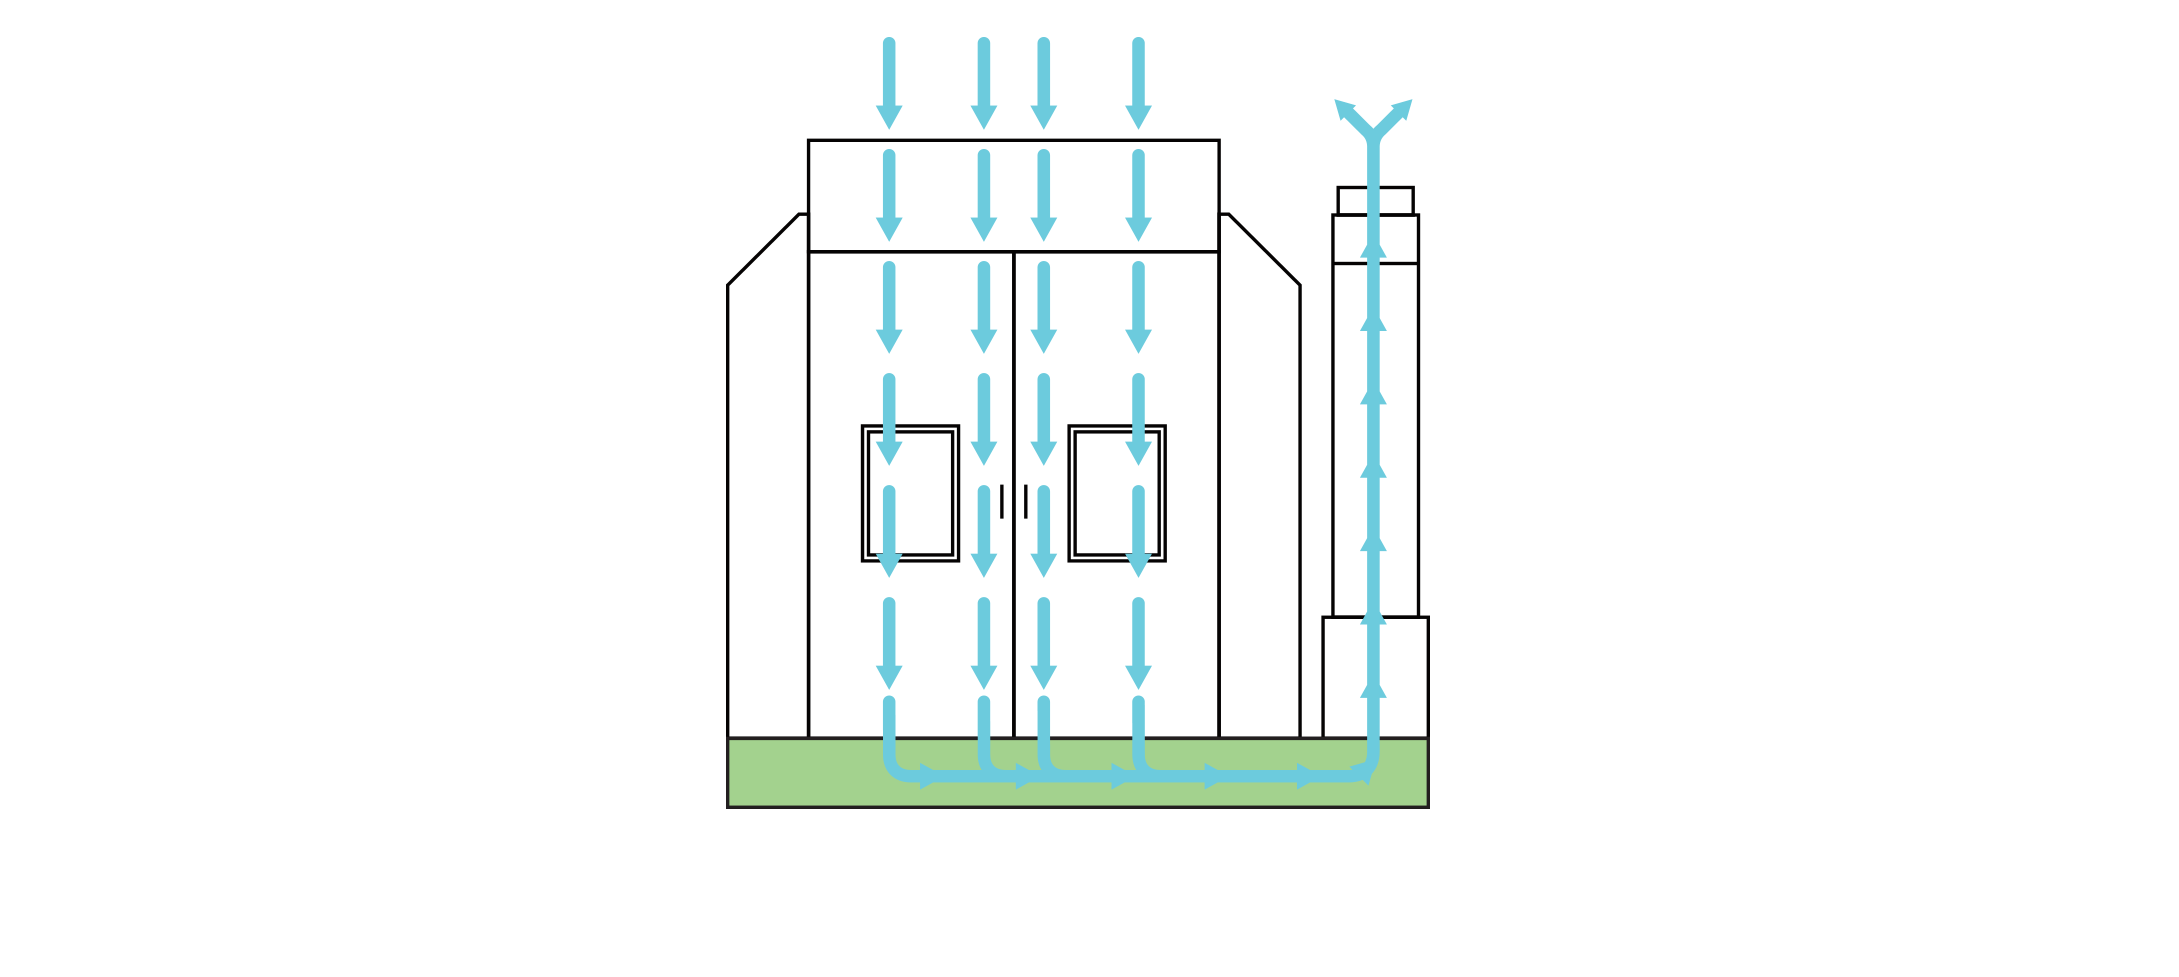 Full Down Draft Non Heated Air Flow Diagram